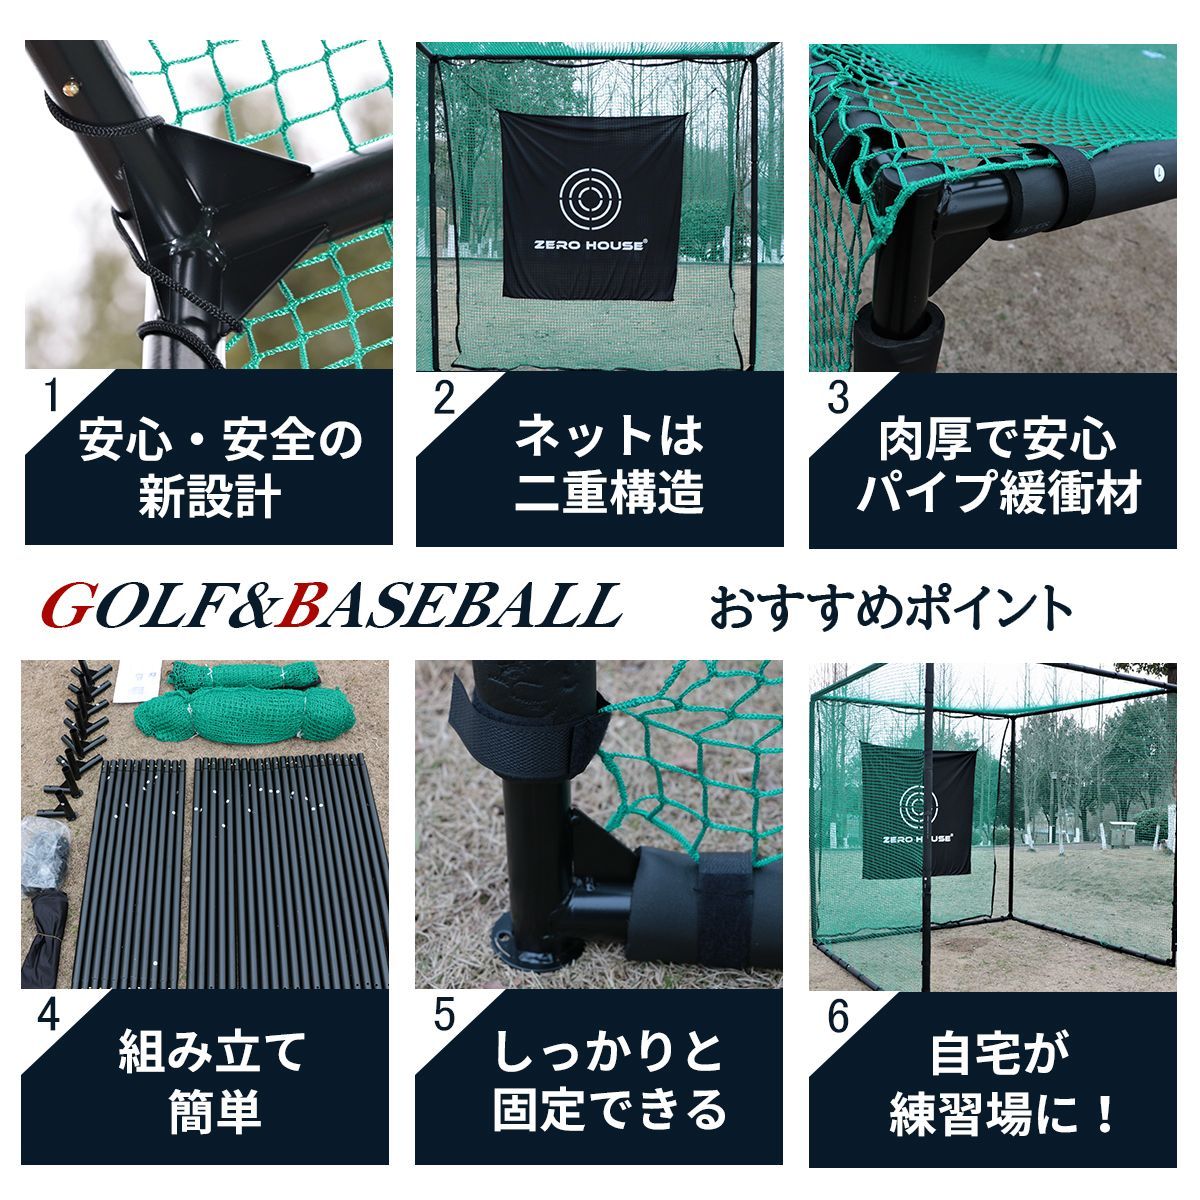 緩衝材付 ゴルフ練習ネット 2.5M×2.5M×2.5M ゴルフ ゴルフネット - ゴルフ